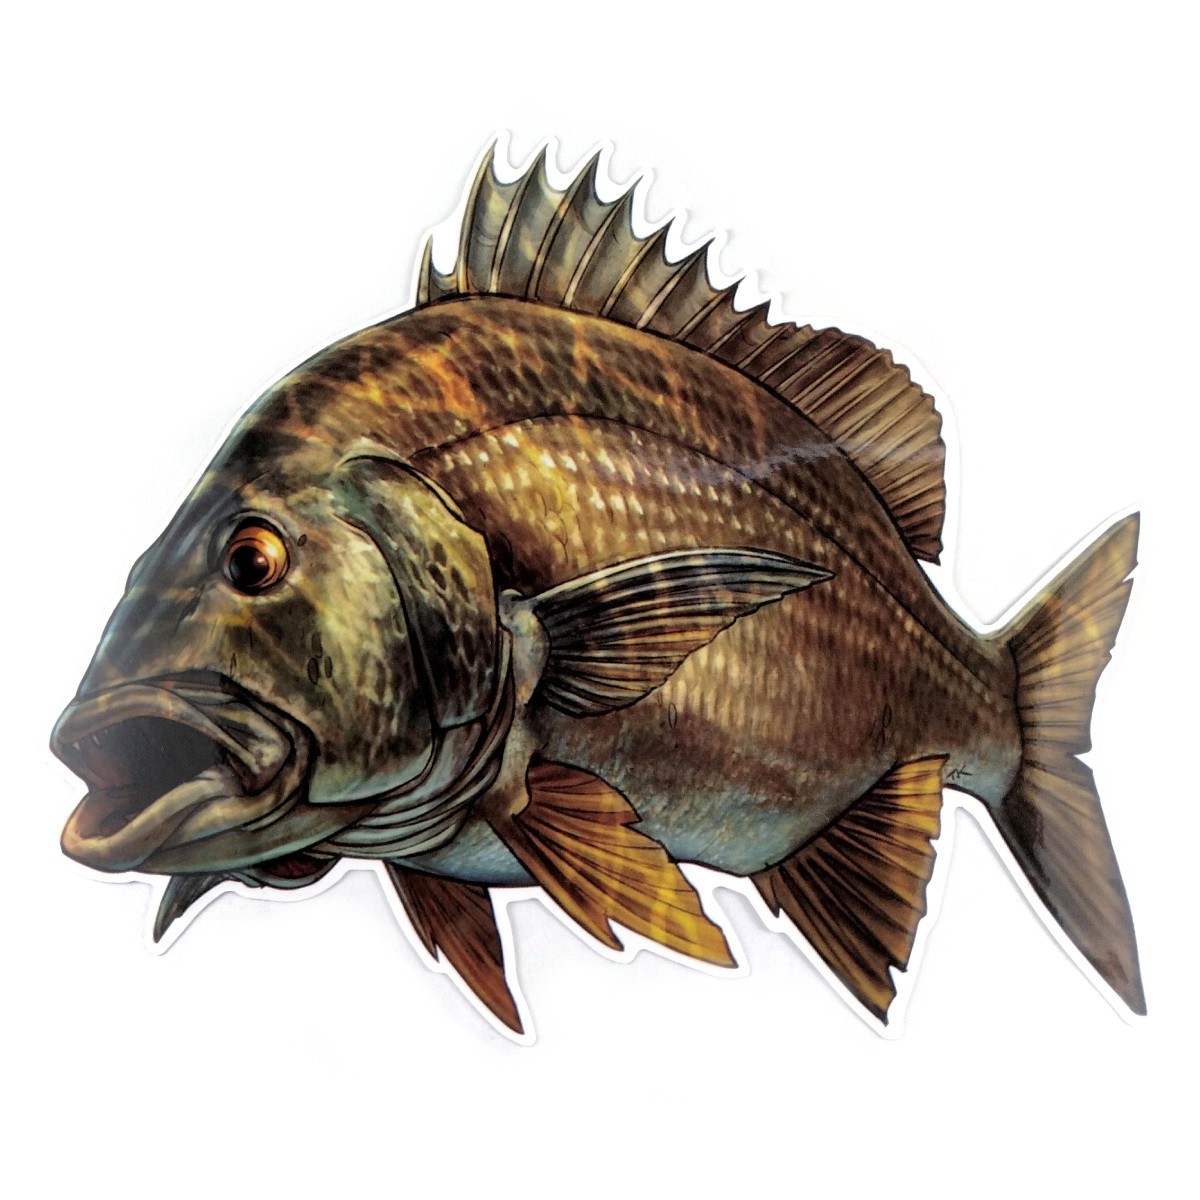 選択した画像 リアル 魚 イラスト かっこいい 2300 リアル かっこいい 魚 イラスト Josspicturentj1m